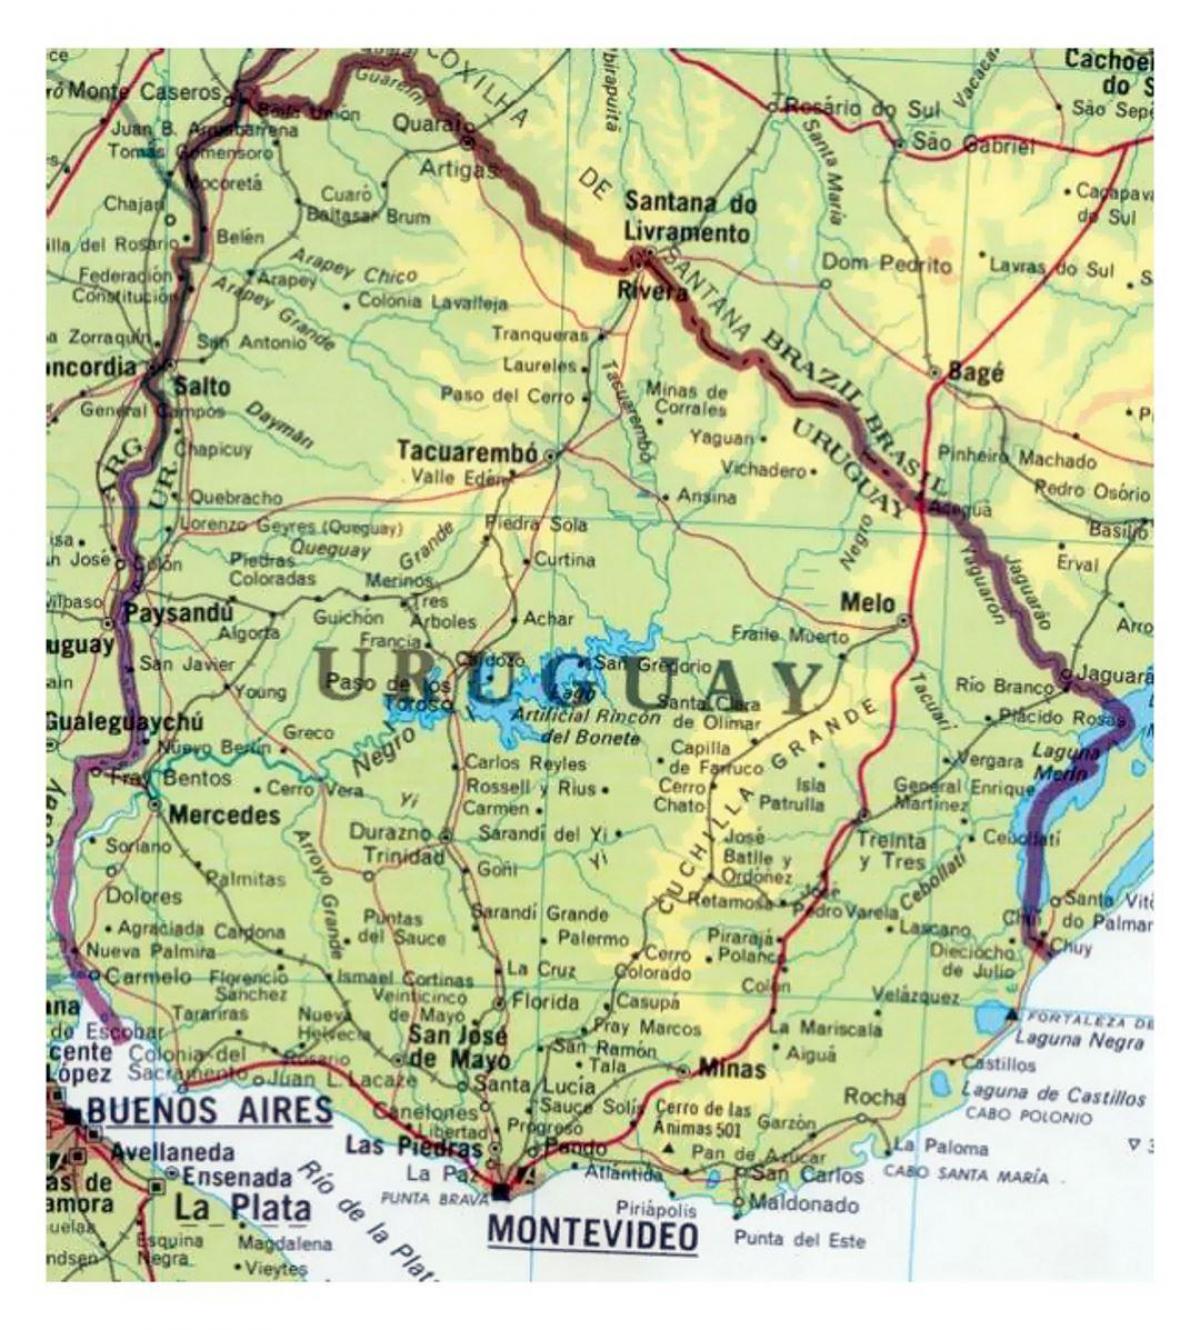 kort over Uruguay